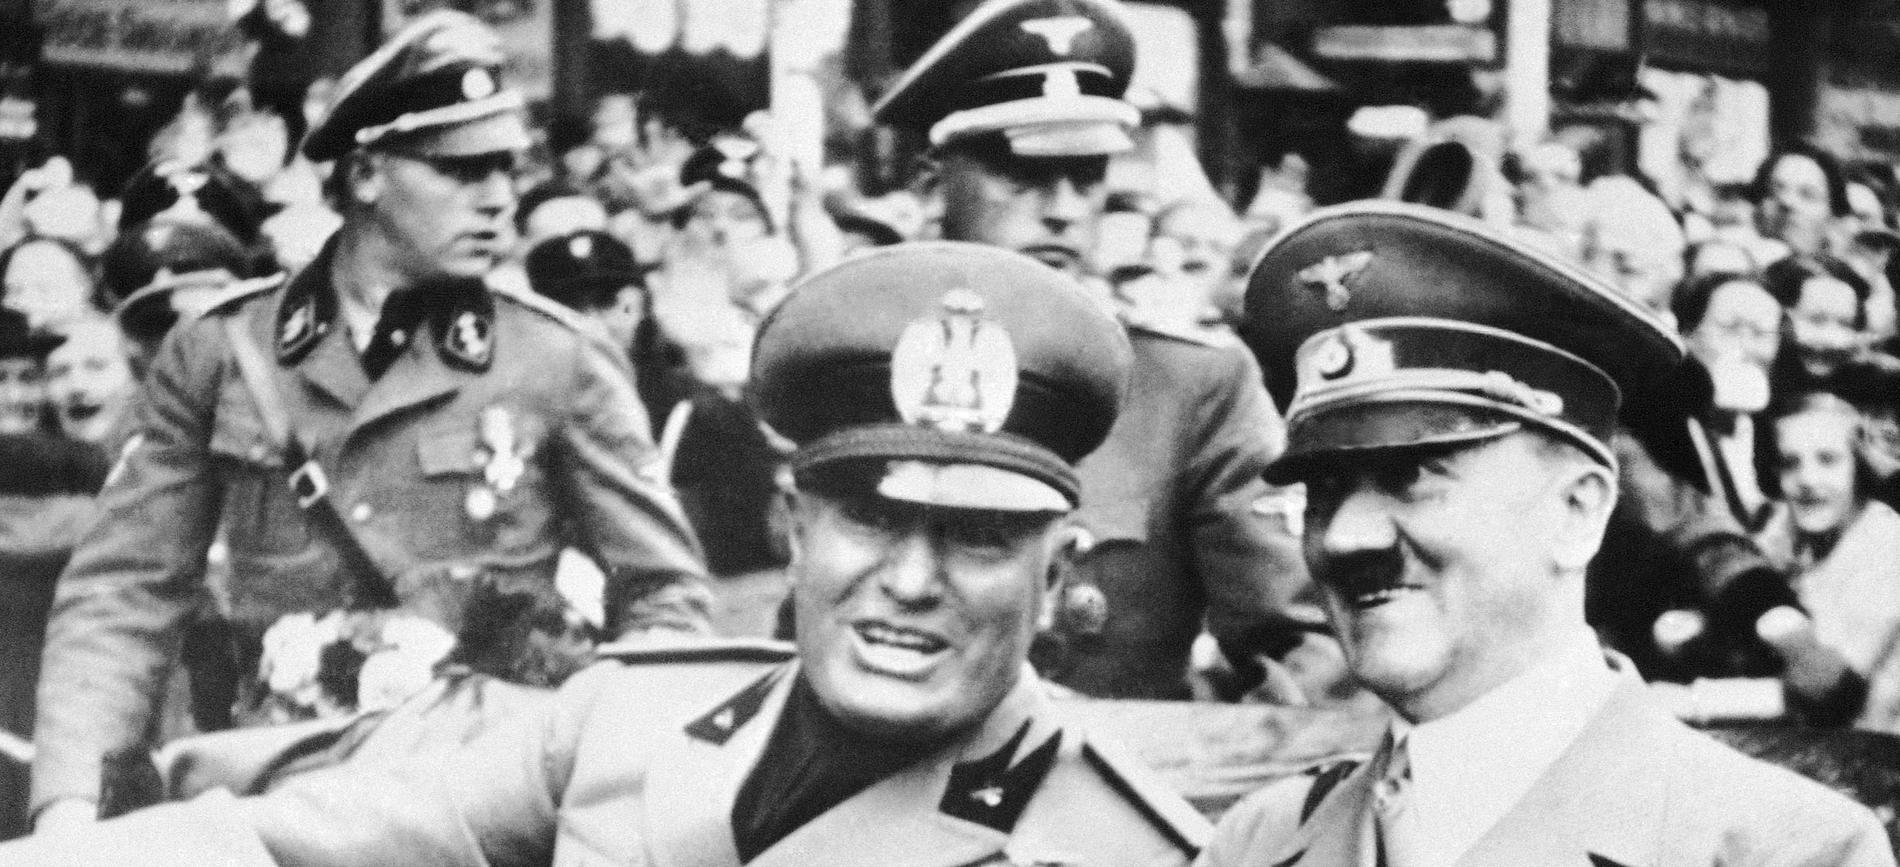 Fascism i baksätet. Hitler och Mussolini under en kortege i Müchen 1938.